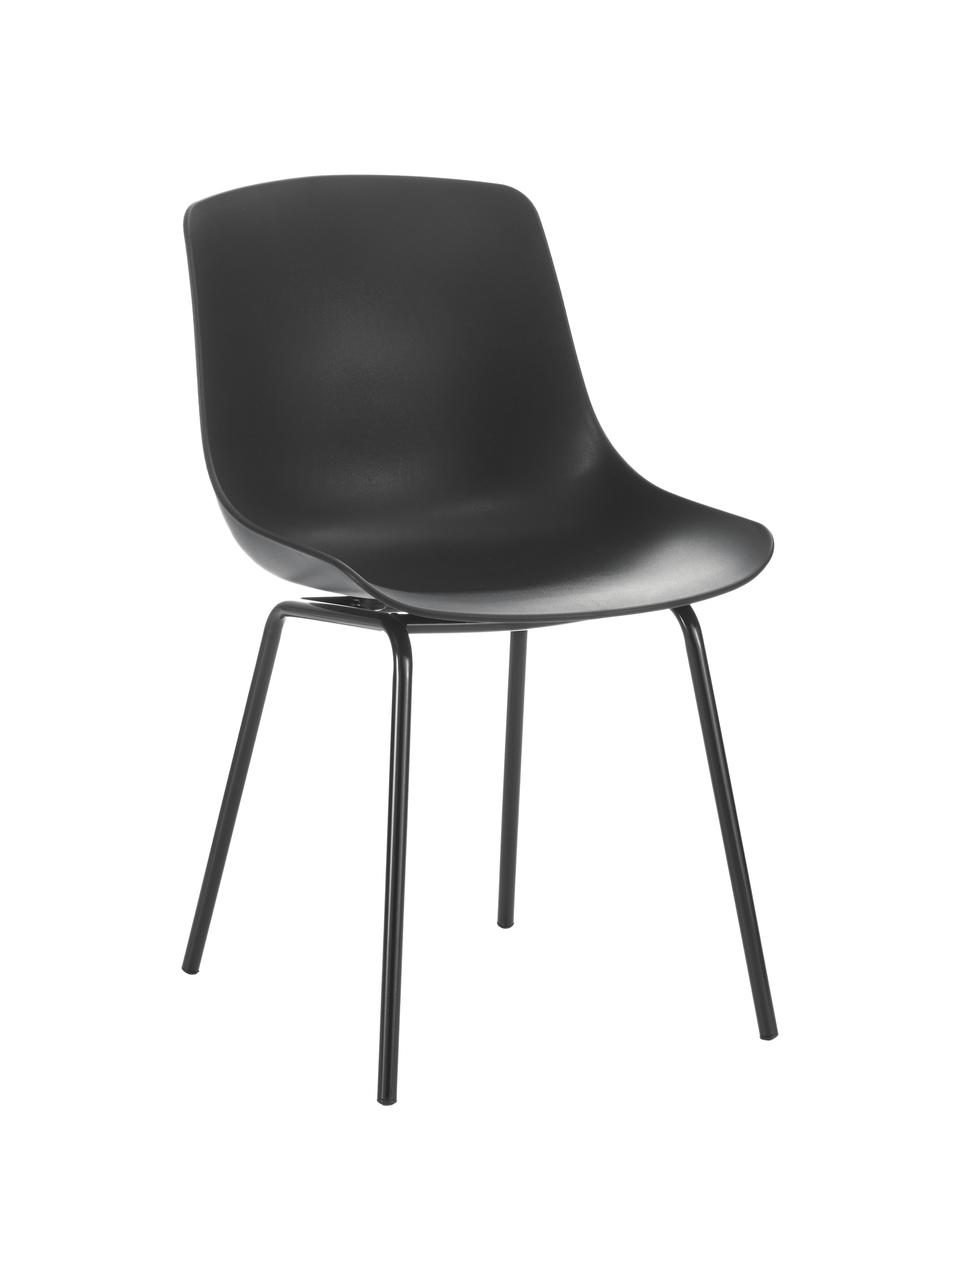 Kunststoffstühle Dave mit Metallbeinen, 2 Stück, Sitzfläche: Kunststoff, Beine: Metall, pulverbeschichtet, Schwarz, B 46 x T 53 cm